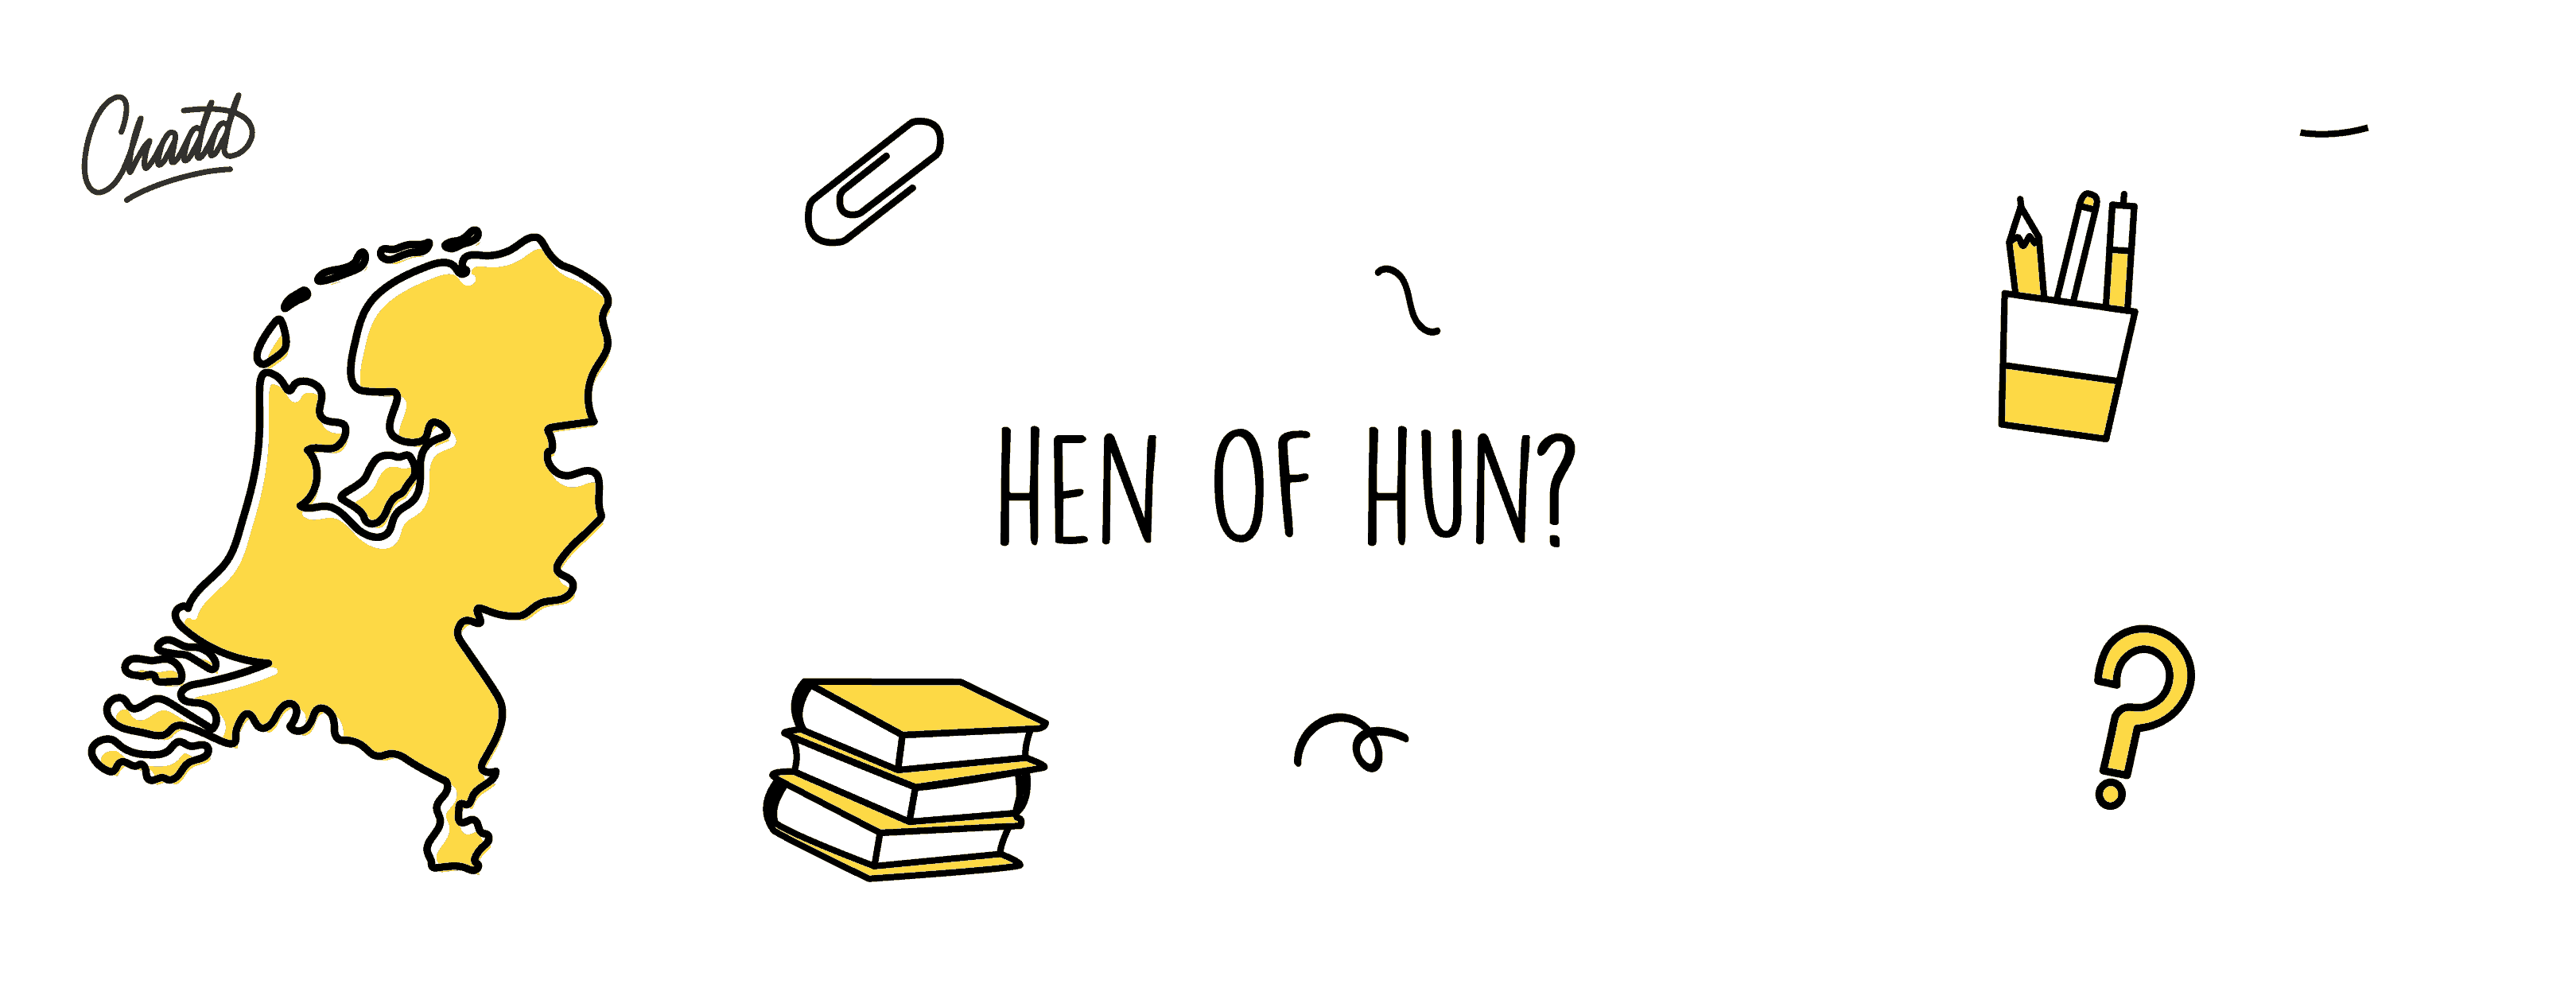 hen of hun